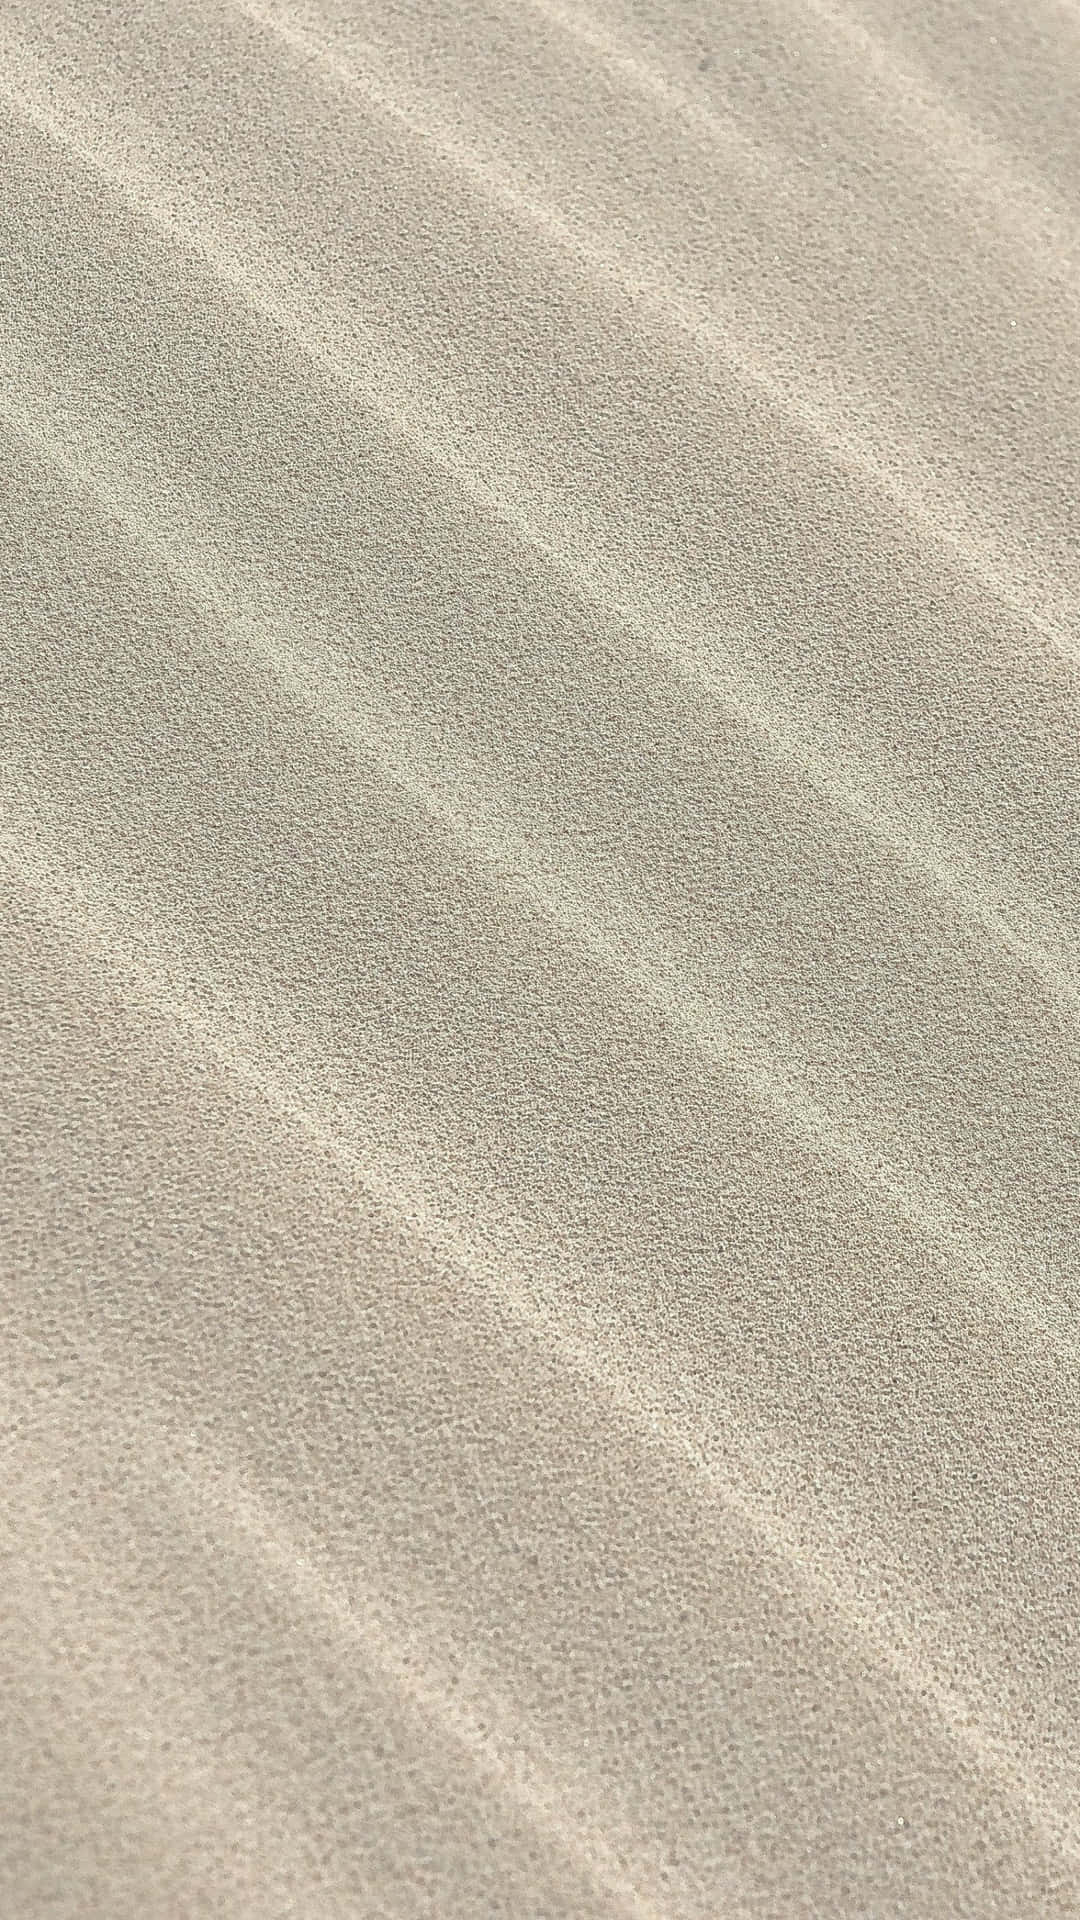 Symmetrischesfeines Sandmuster Wallpaper